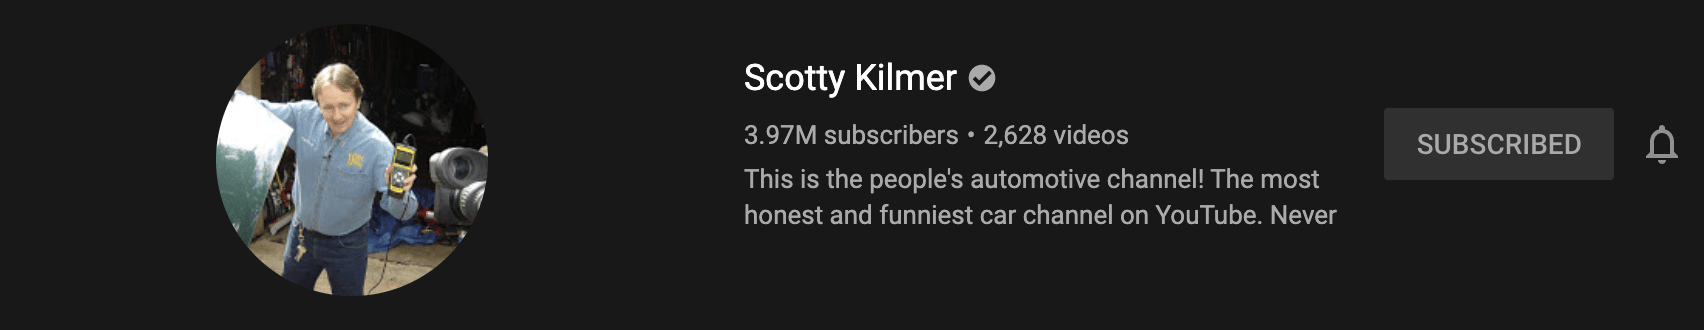 Scotty Kilmer youtube